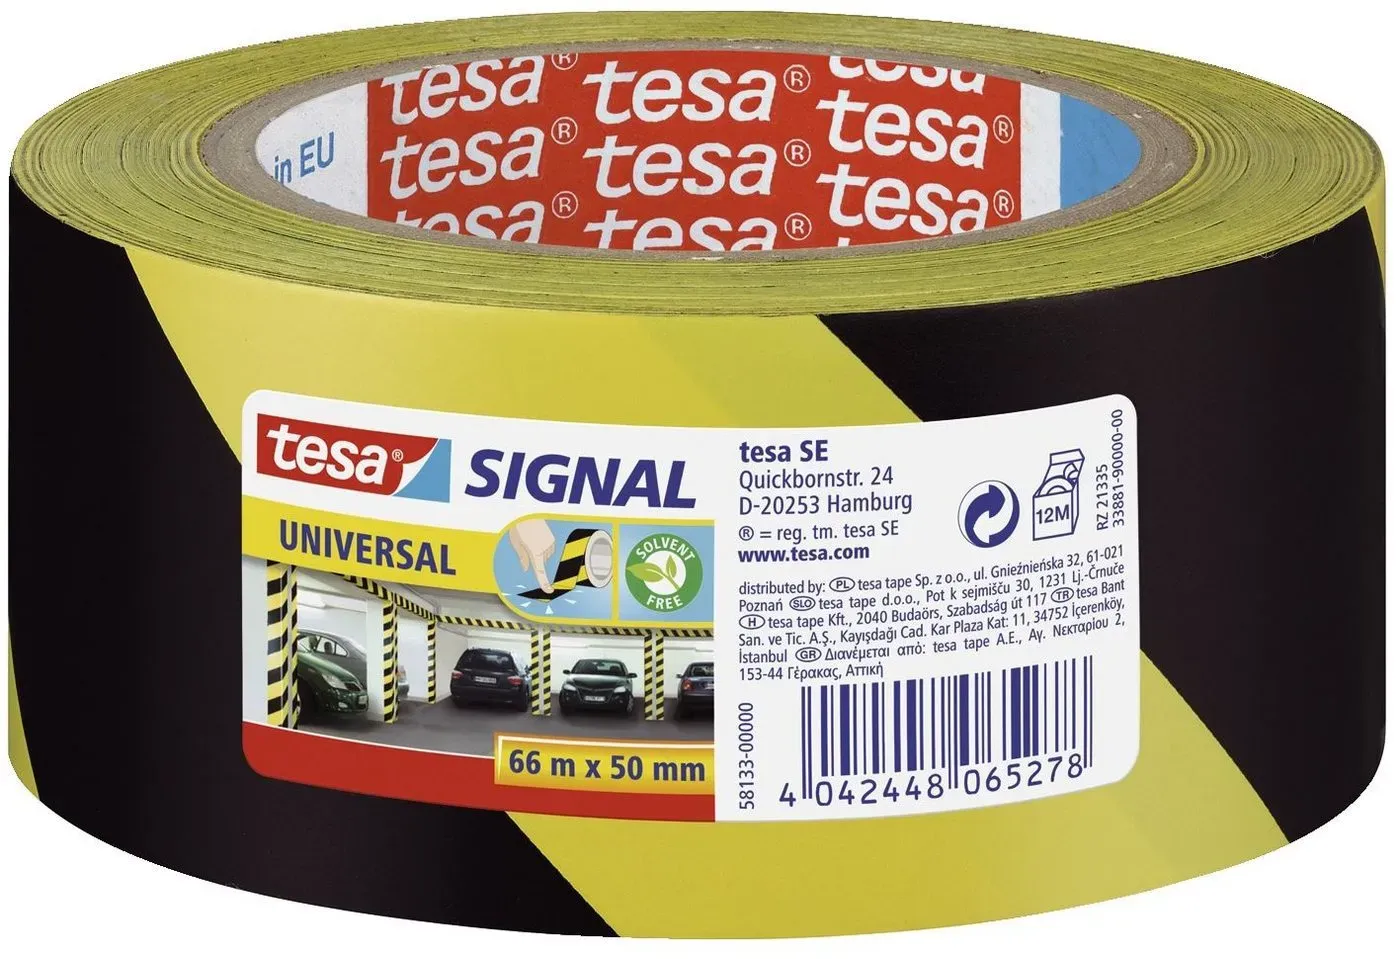 tesa Handgelenkstütze tesa Signal Markierungsklebeband Univ. 66m 50mm gelb/schwarz gelb|schwarz